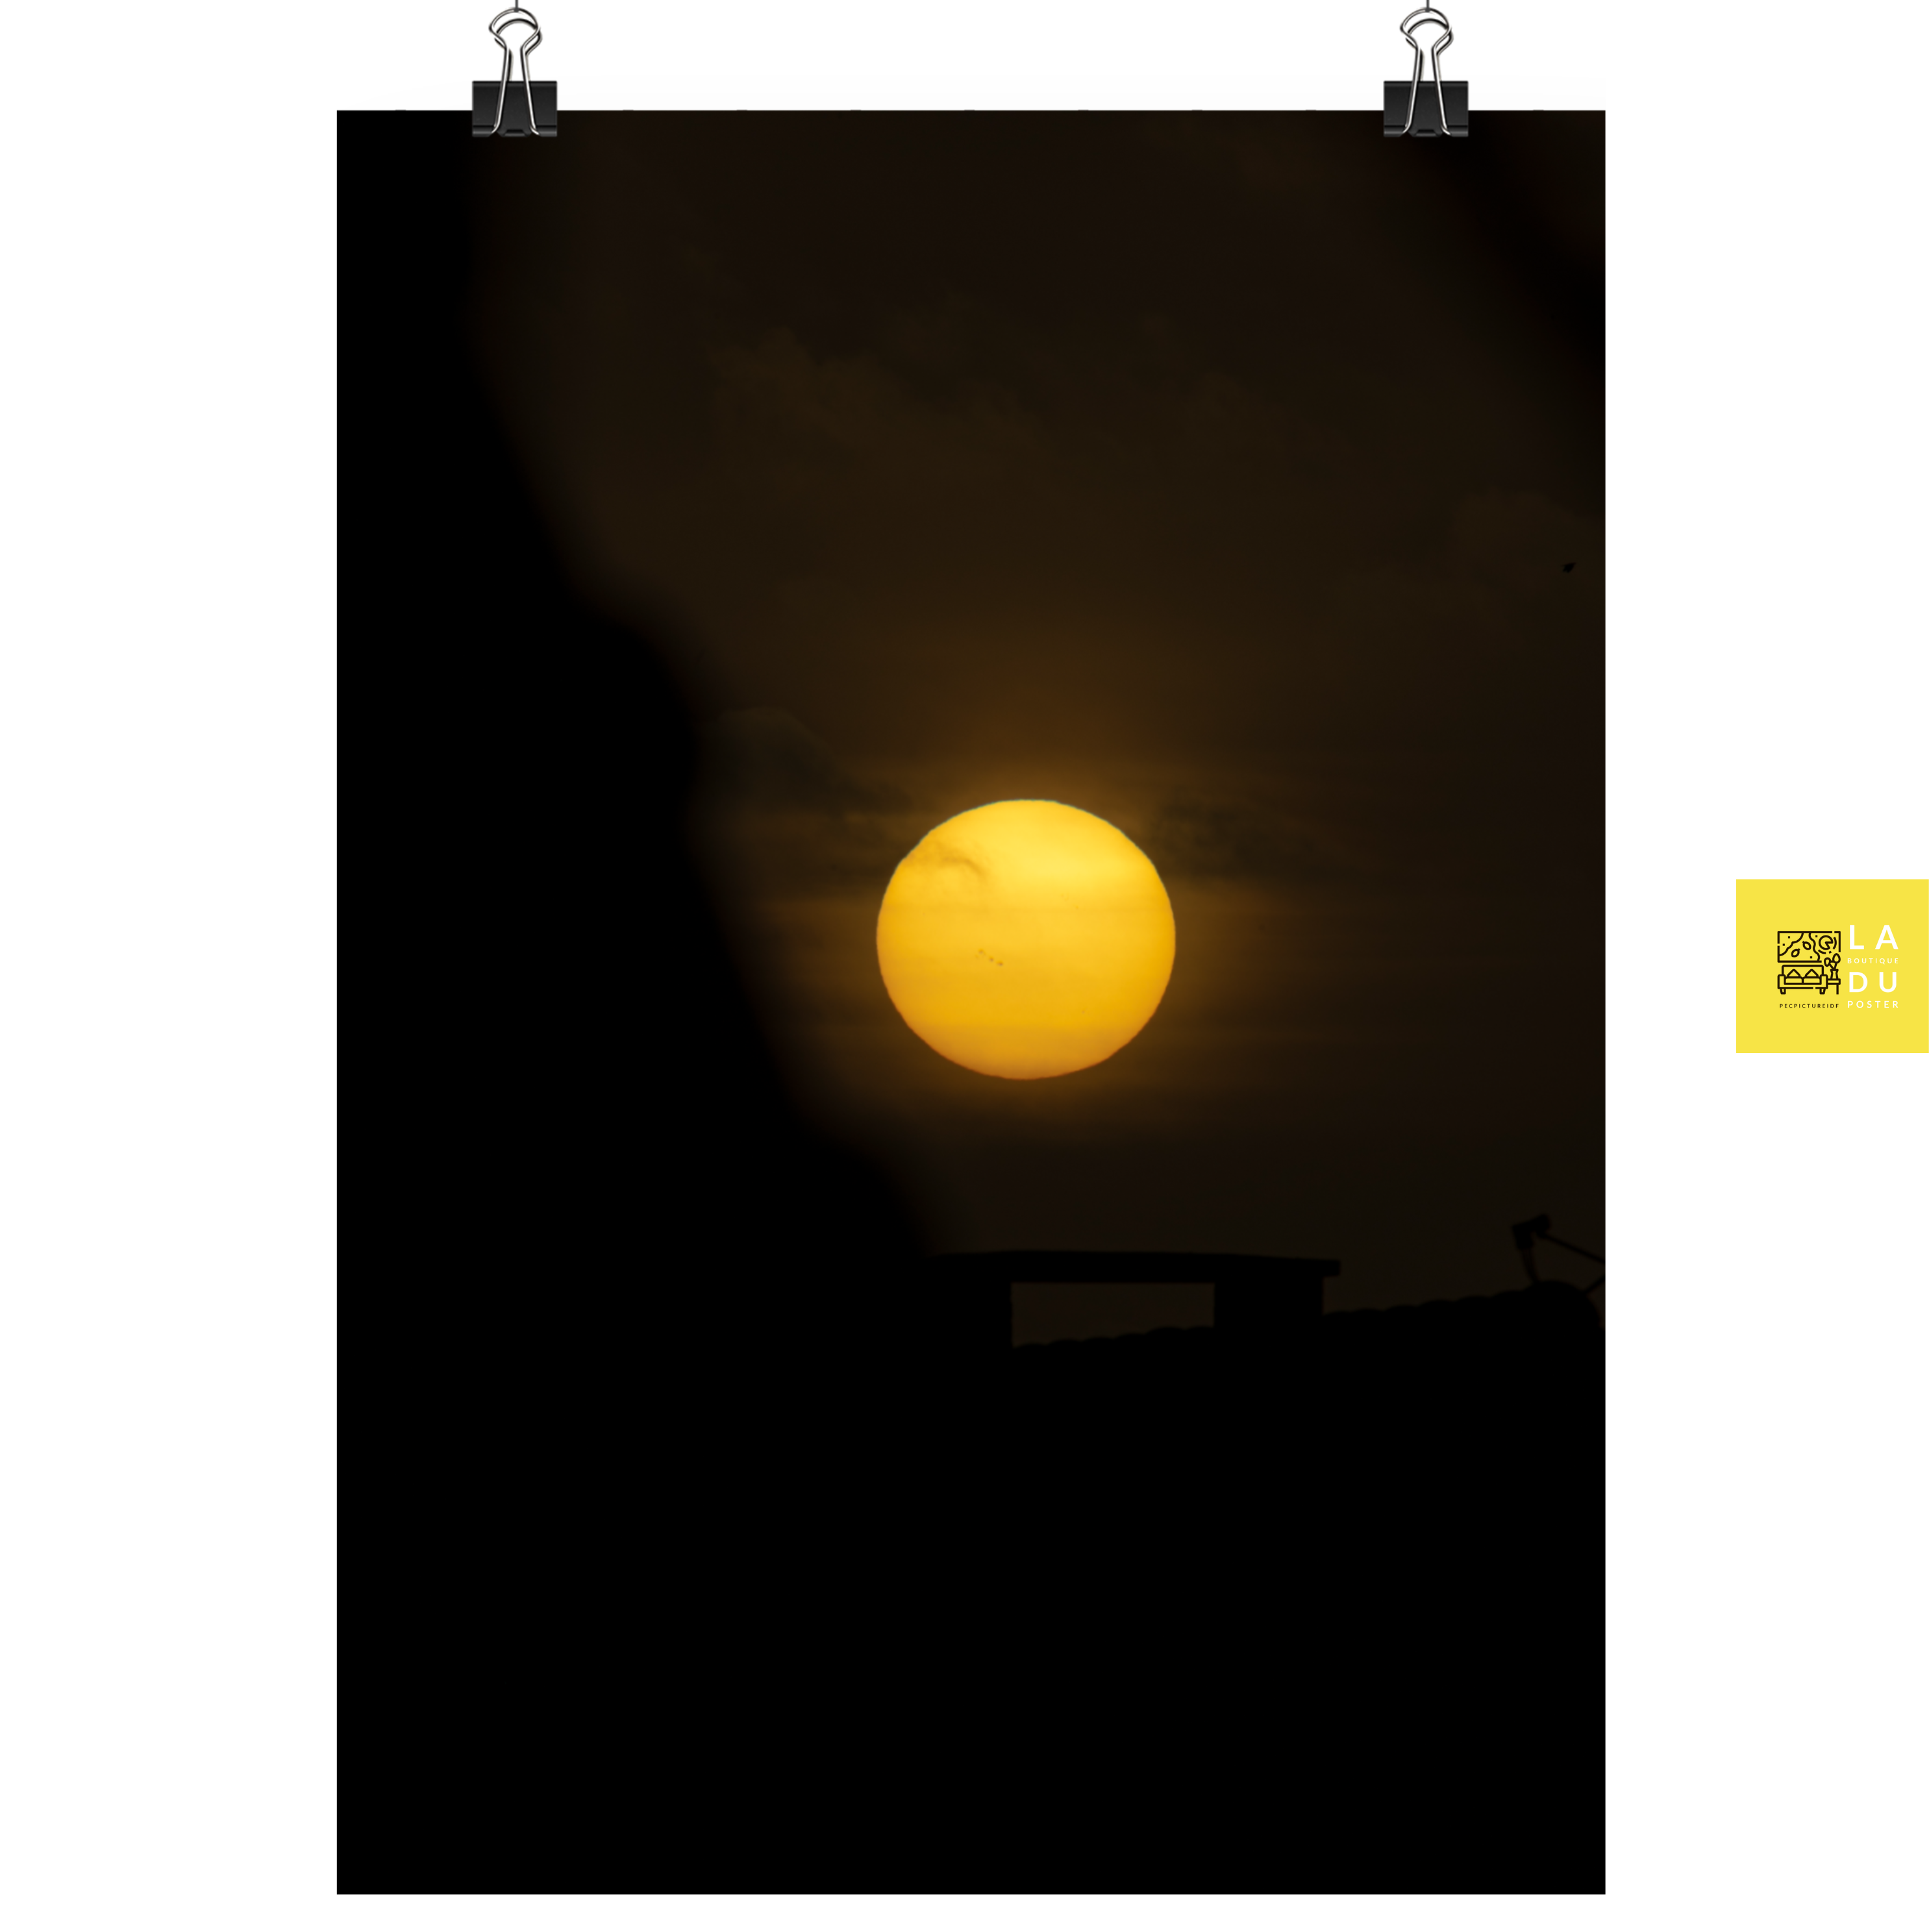 Poster mural - Un soleil tout jaune – Photographie du soleil – Poster photo, poster XXL, photographie murale et des posters muraux unique au monde. La boutique de posters créée par Yann Peccard un Photographe français.